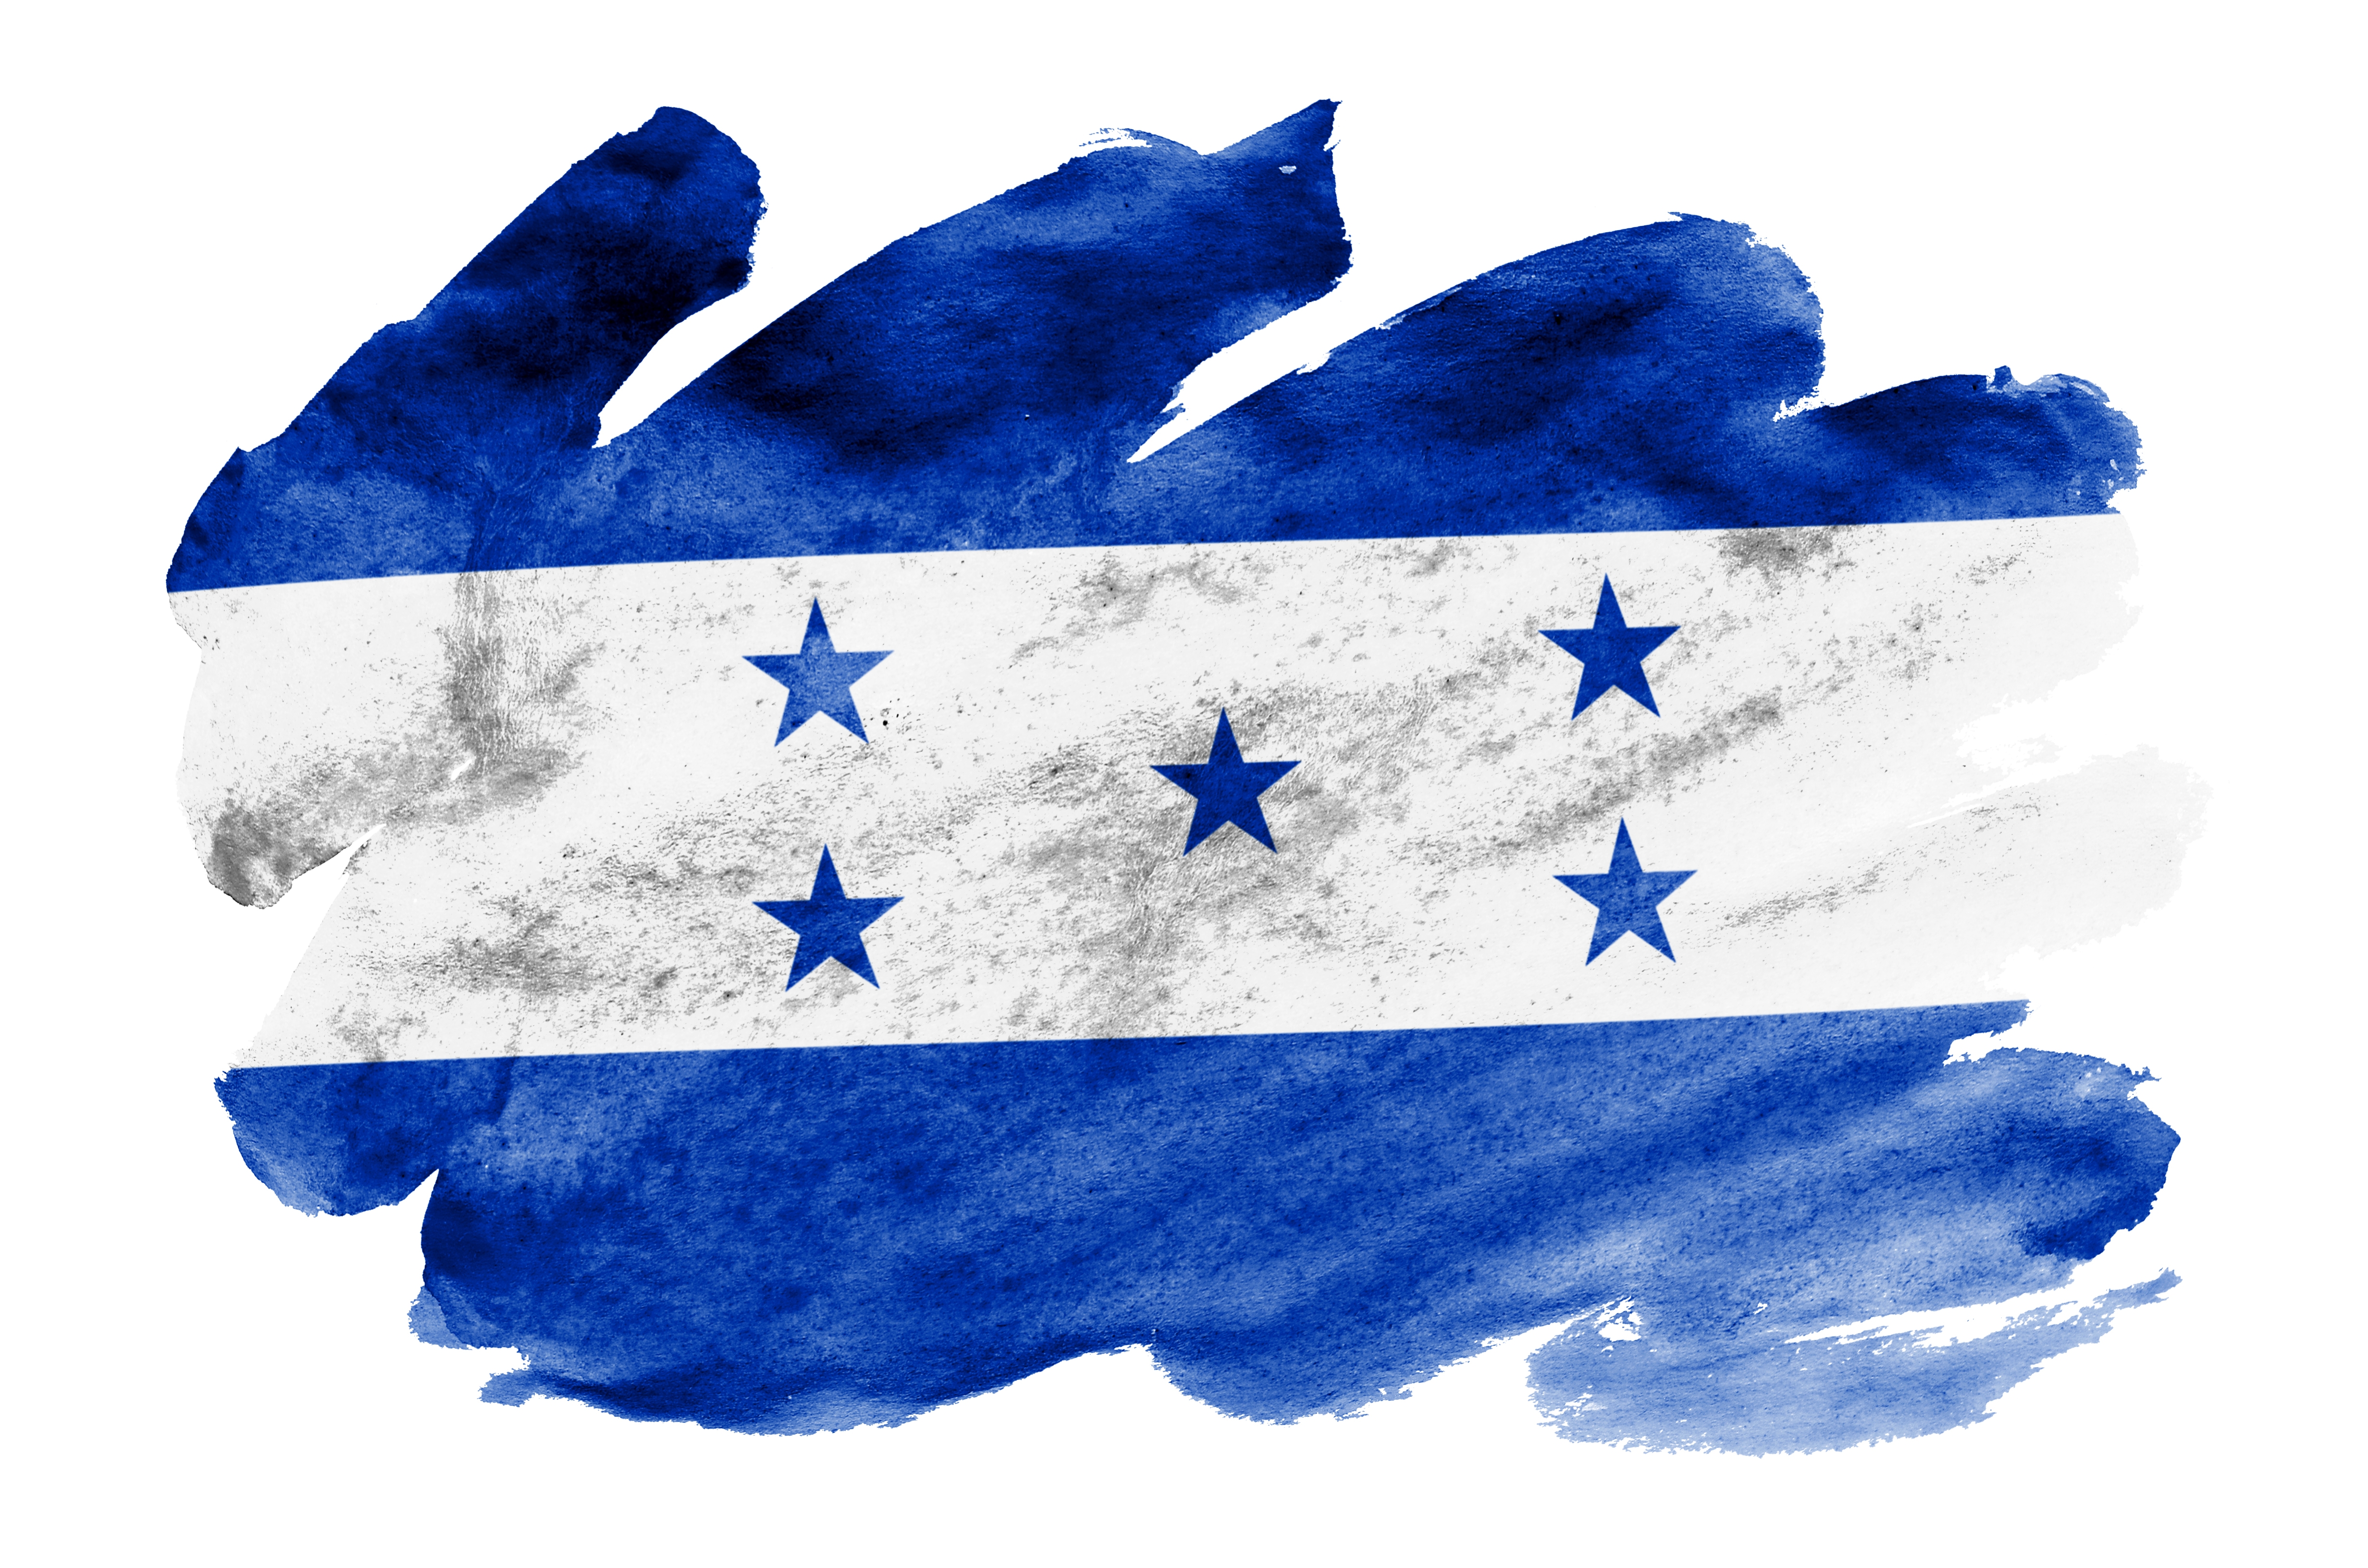 honduras-flag-is-depicted-in-liquid-watercolor-sty-K3DCH9Y.jpg